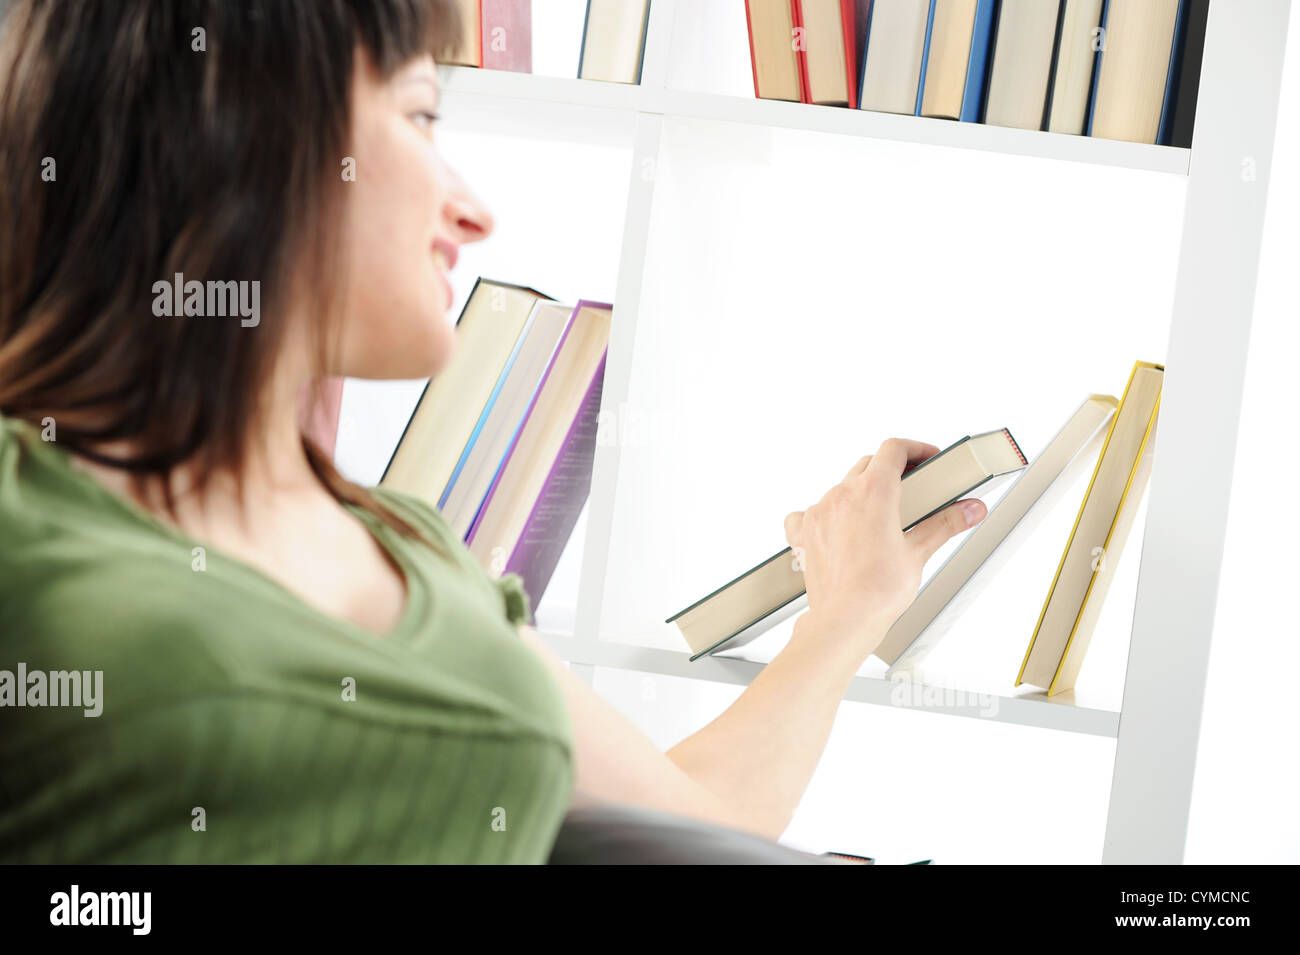 Jeune femme à la recherche d'un livre à l'étagère , photo similaire sur mon portefeuille Banque D'Images